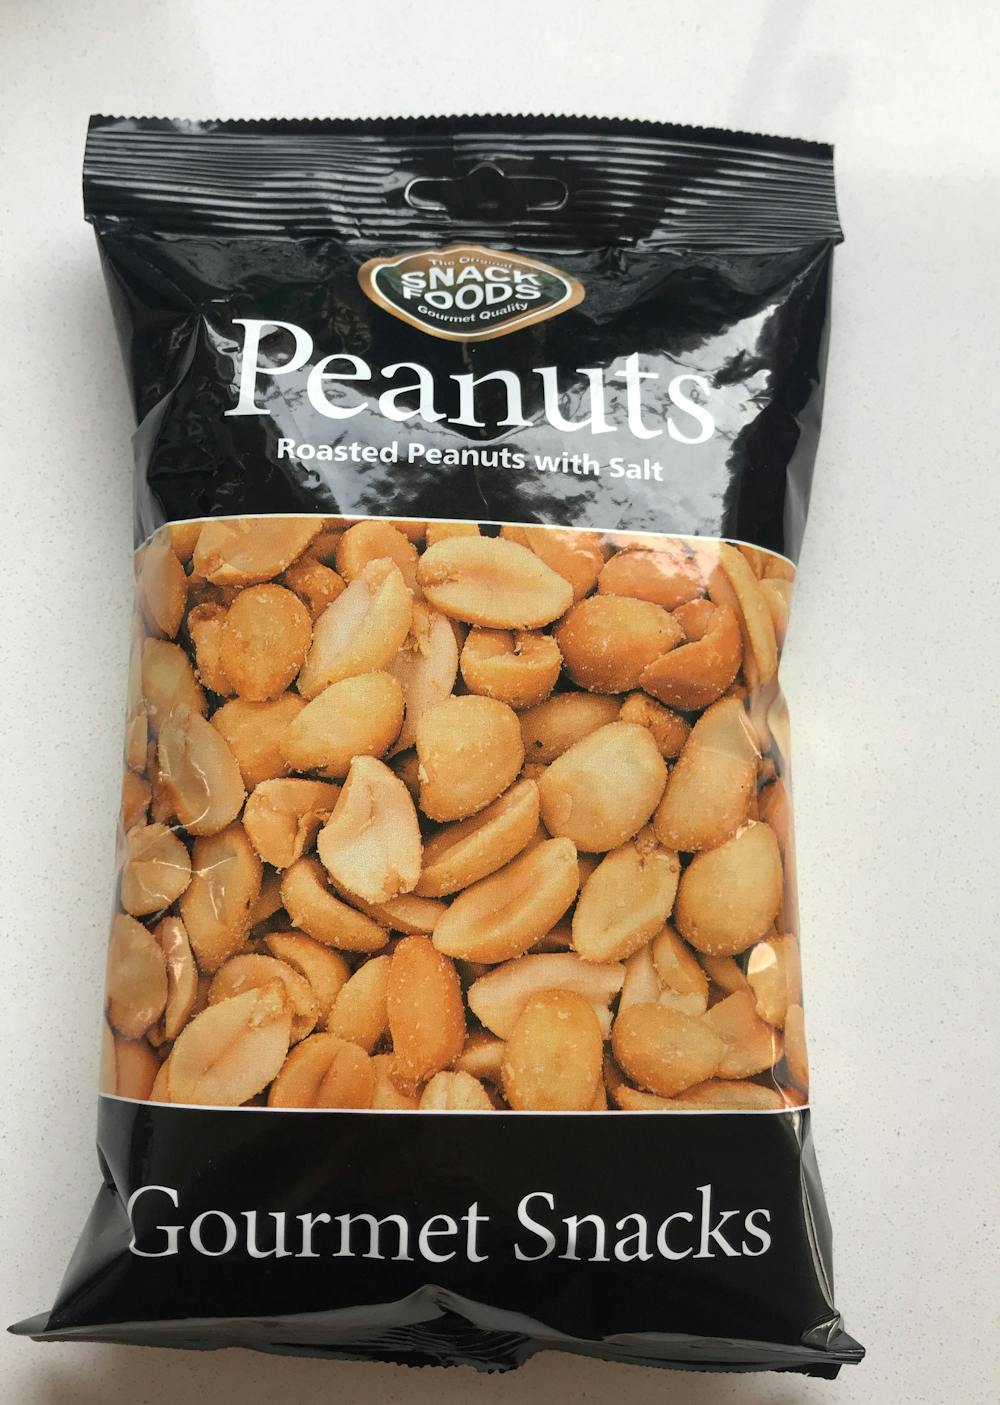 Peanuts, Snack foods